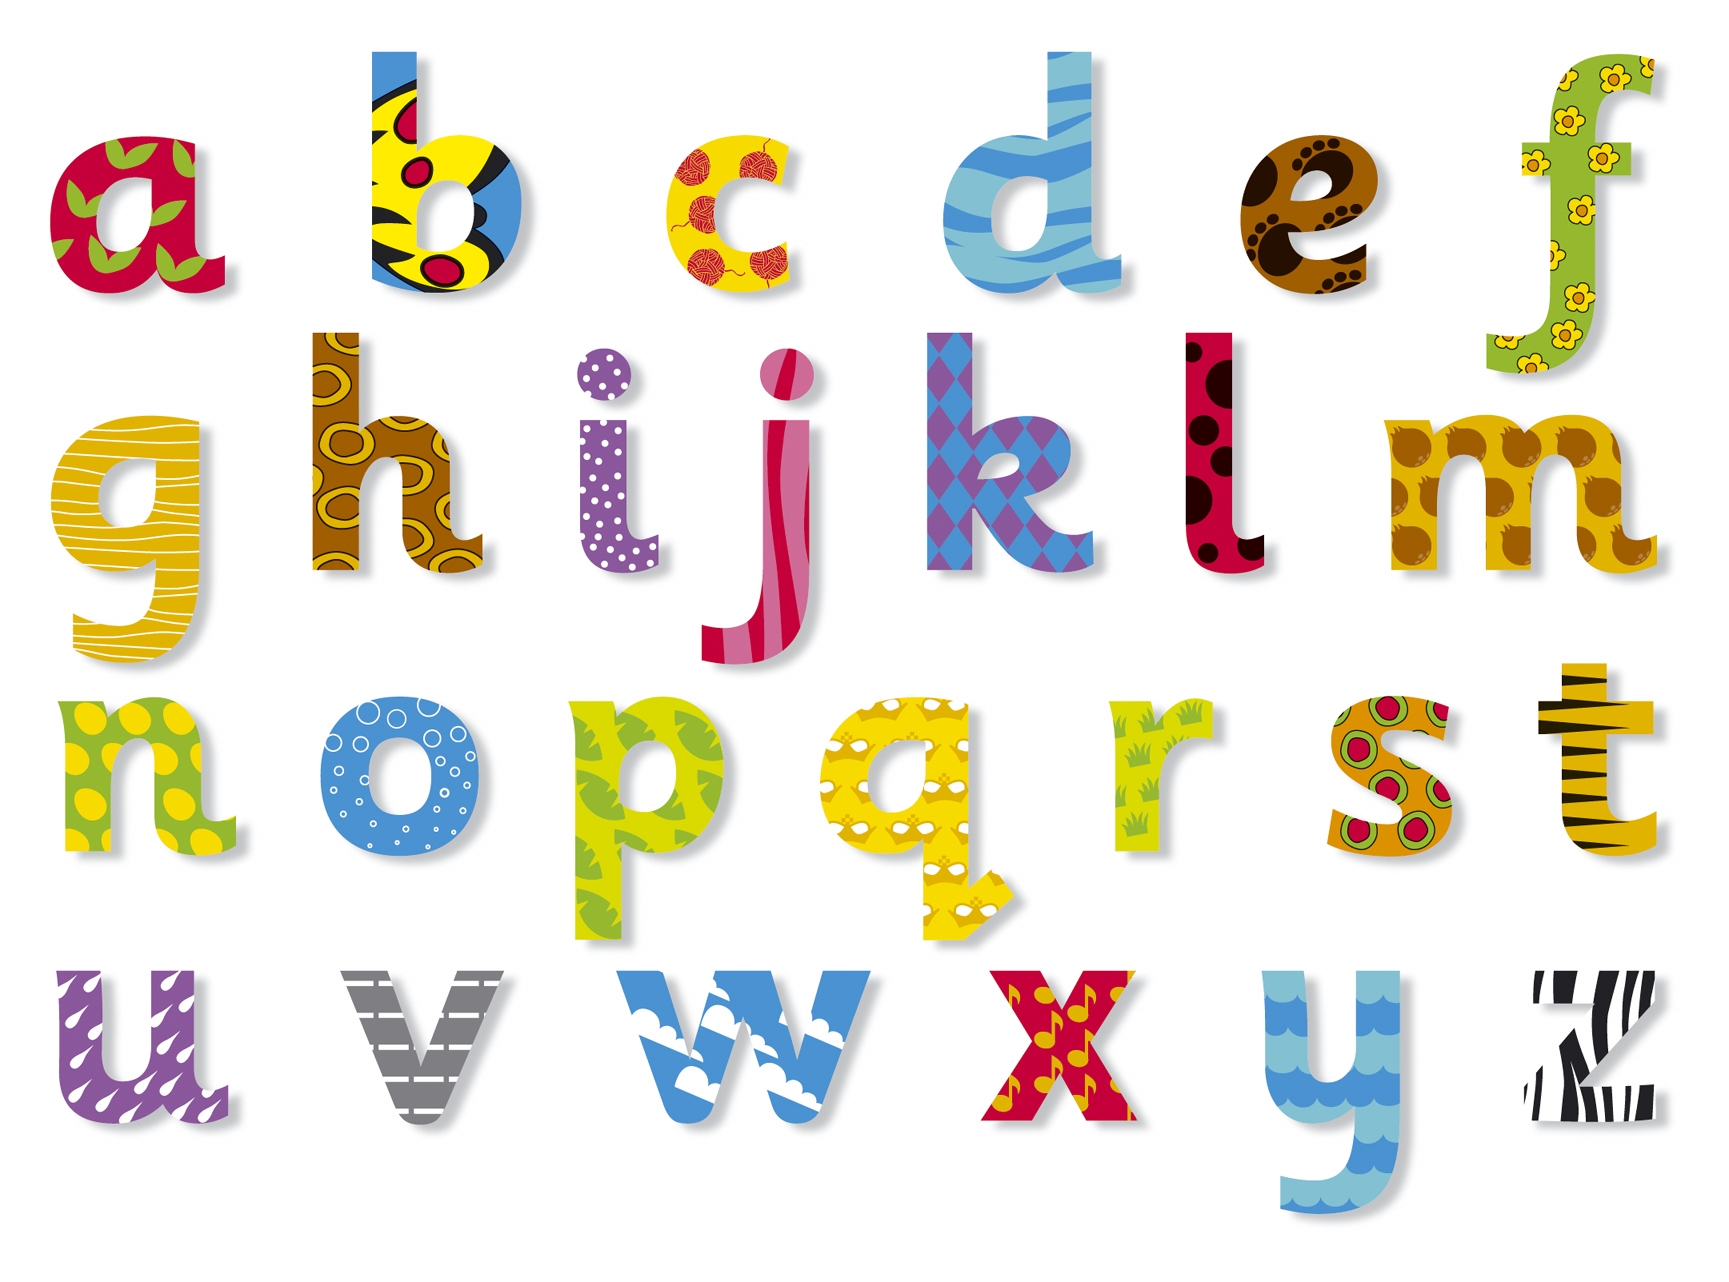 un fondo de pantalla del alfabeto,texto,fuente,gráficos